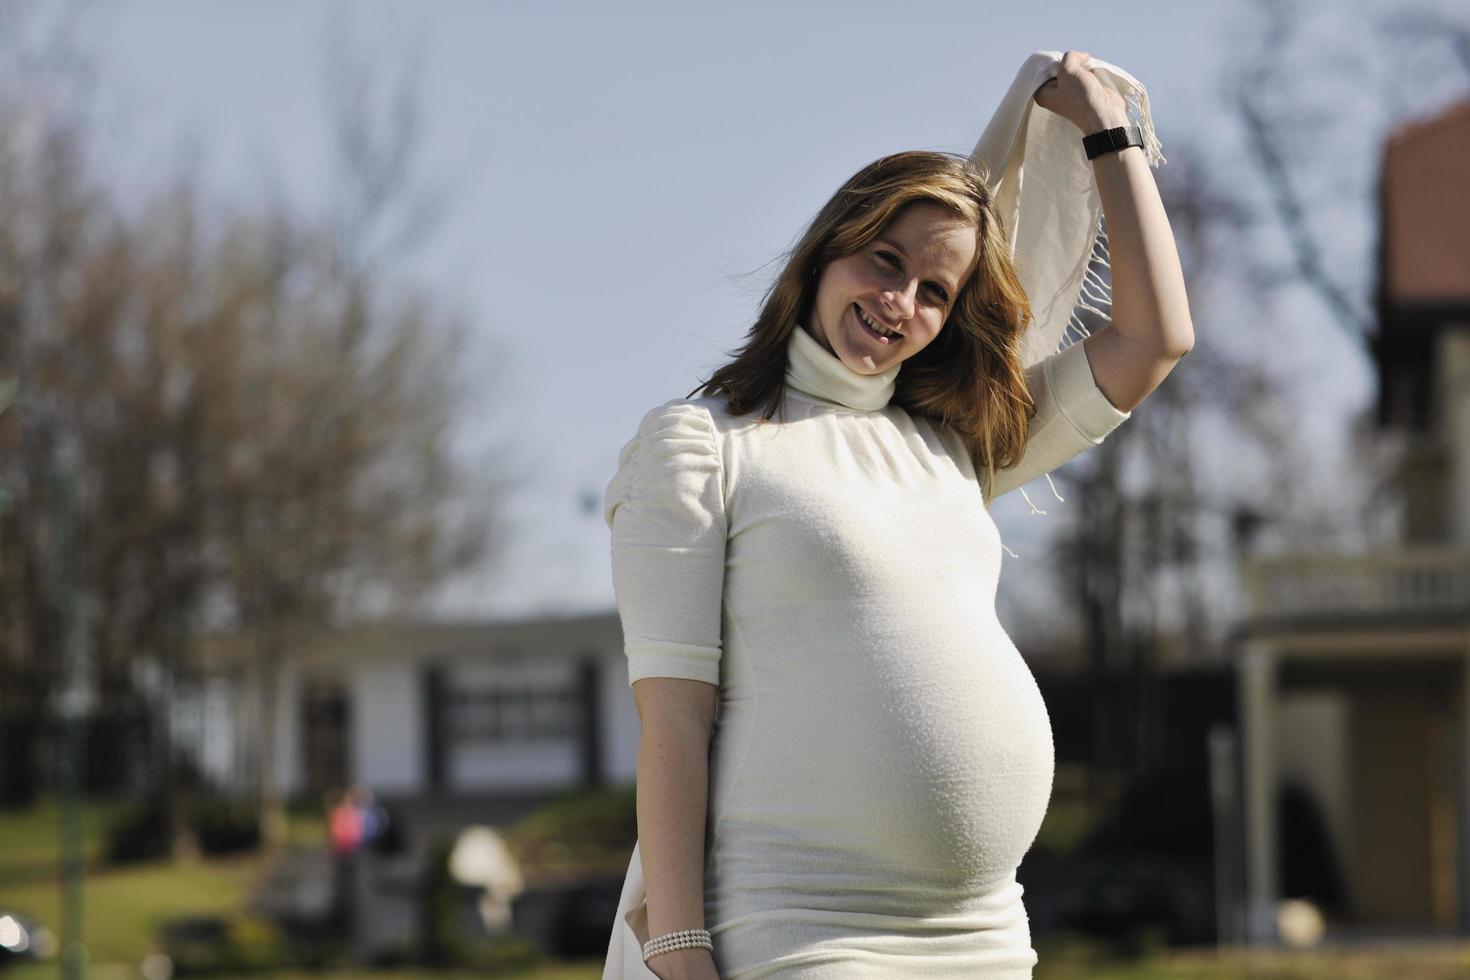 contento giovane incinta donna all'aperto foto